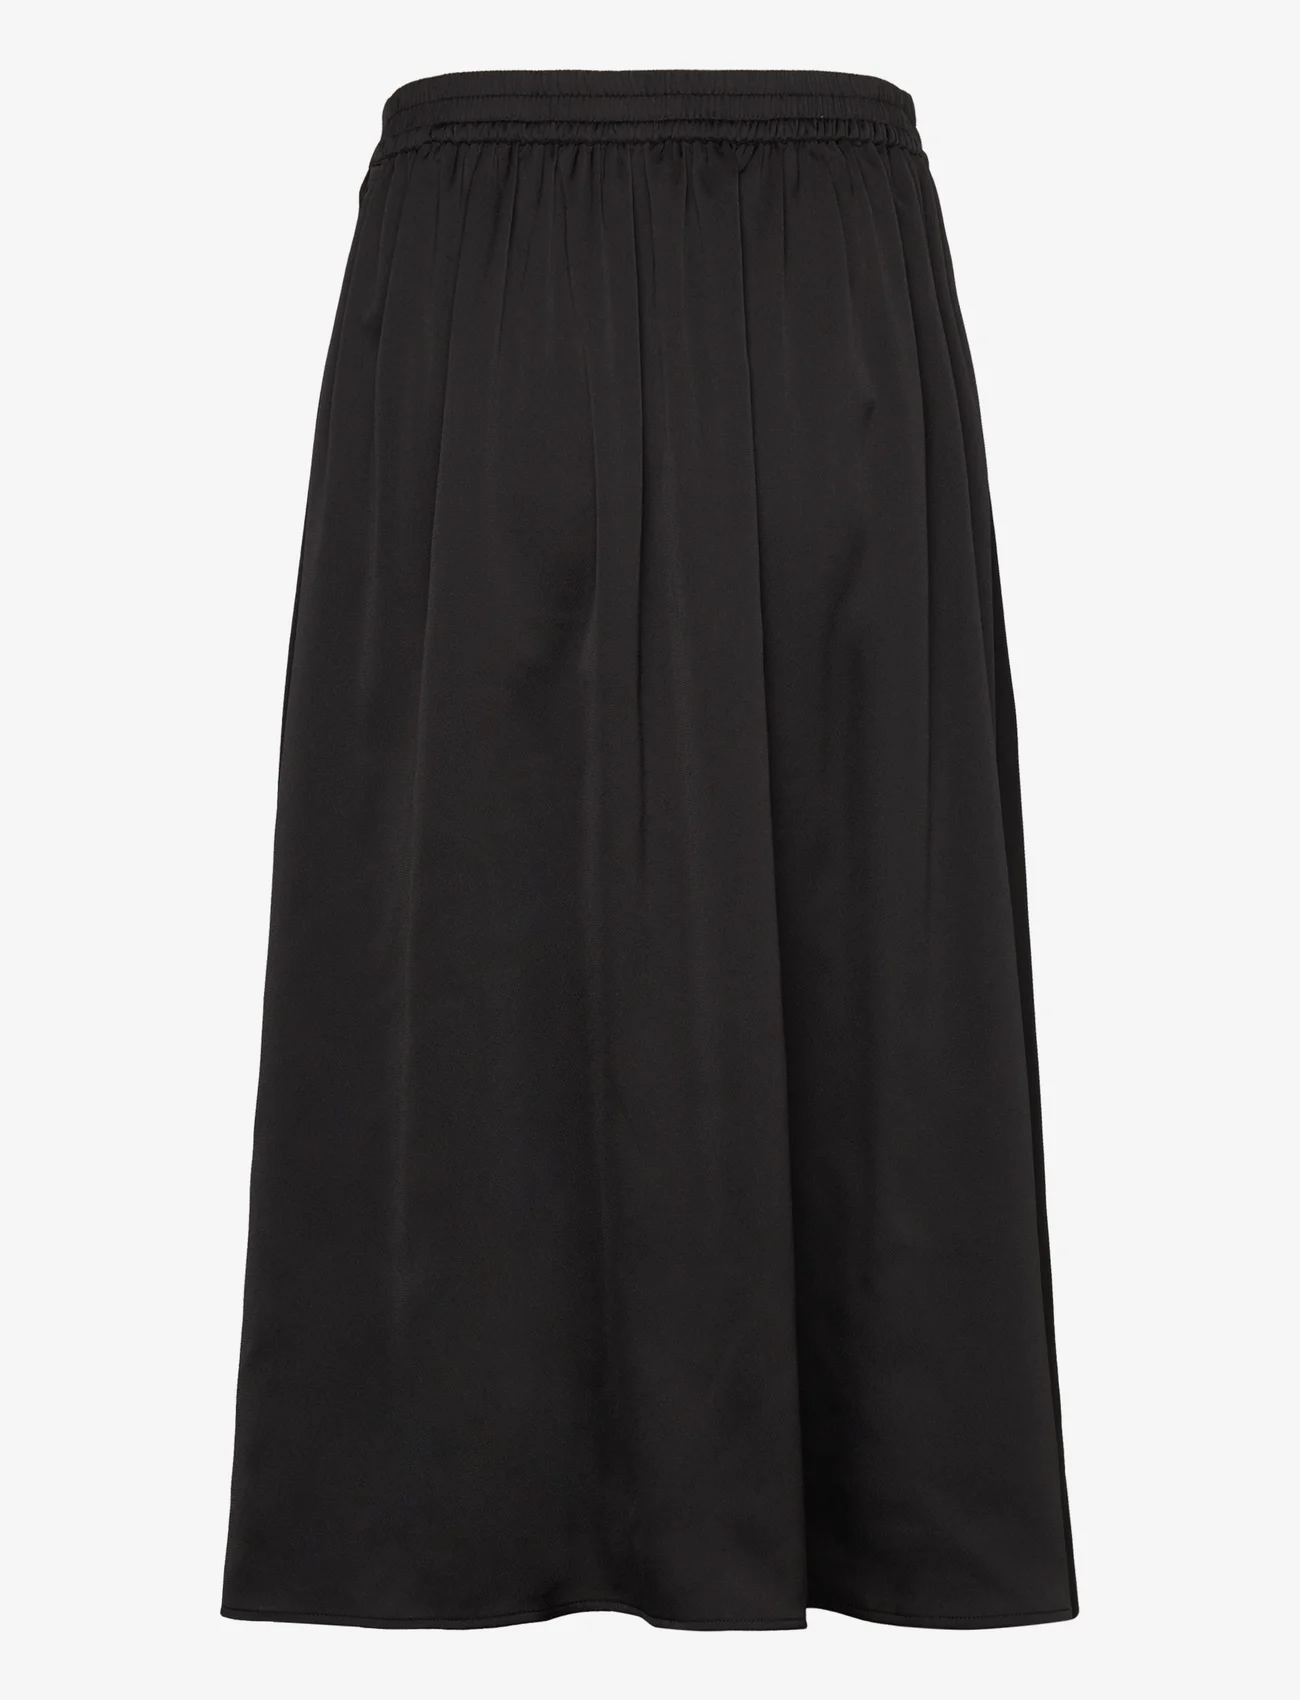 Bruuns Bazaar - AcaciaBBAmattas skirt - vidutinio ilgio sijonai - black - 1